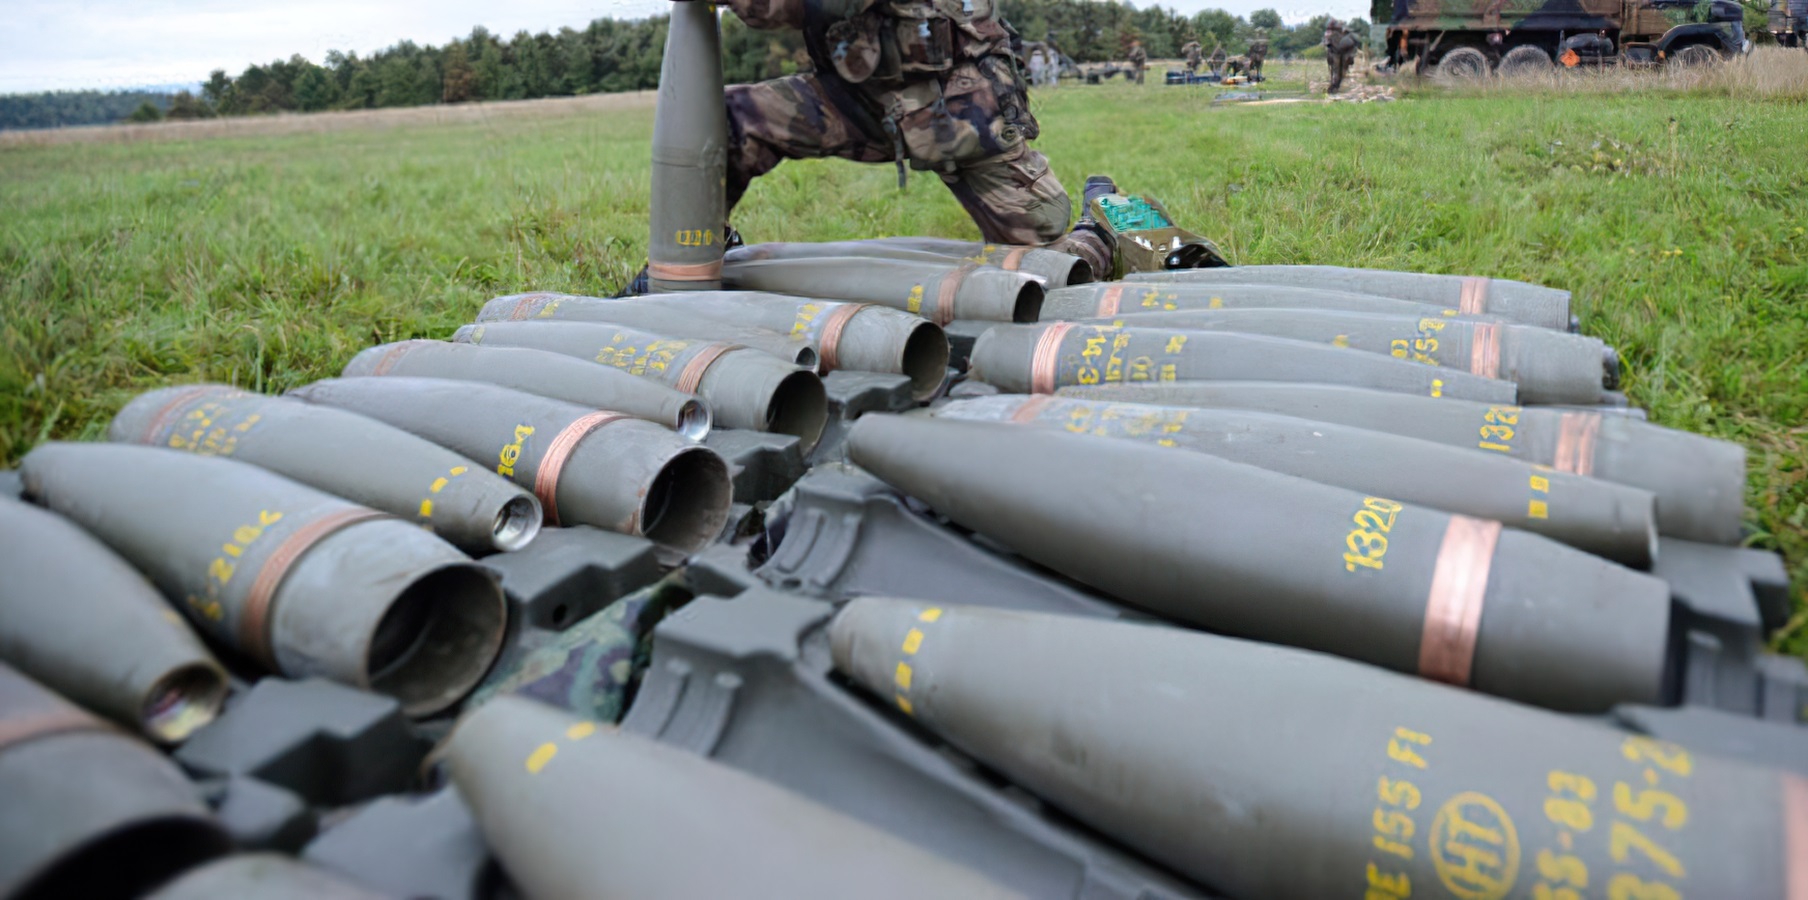 Δύση: «Ο ουκρανικός στρατός να ξεκινήσει πόλεμο ελιγμών γιατί τελειώνουν τα πυρομαχικά πυροβολικού»